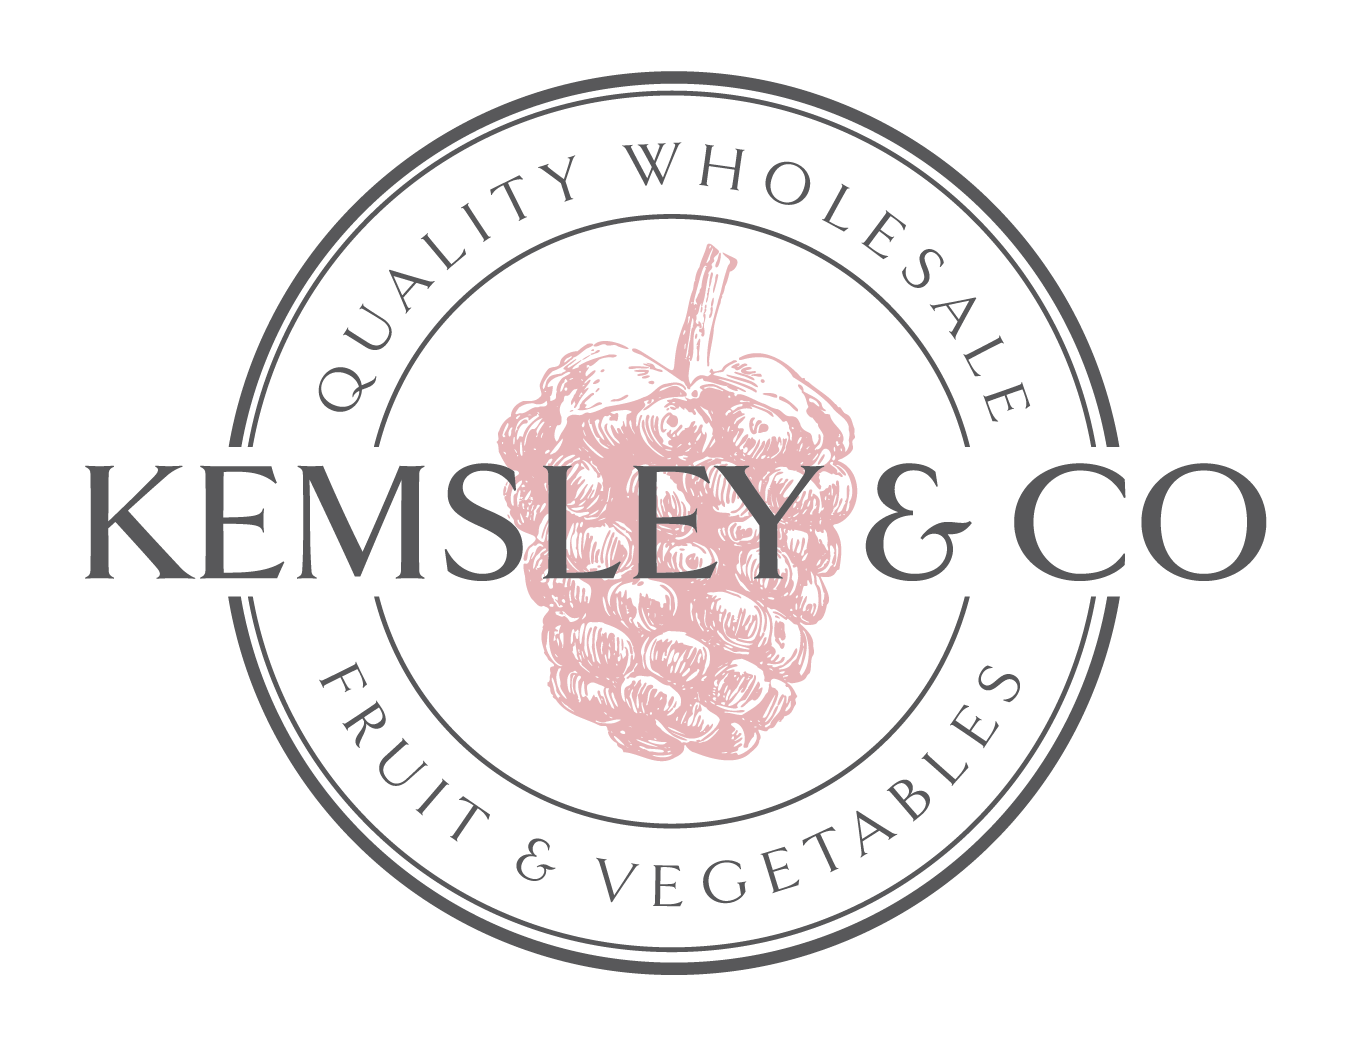 Kemsley & Co Logo